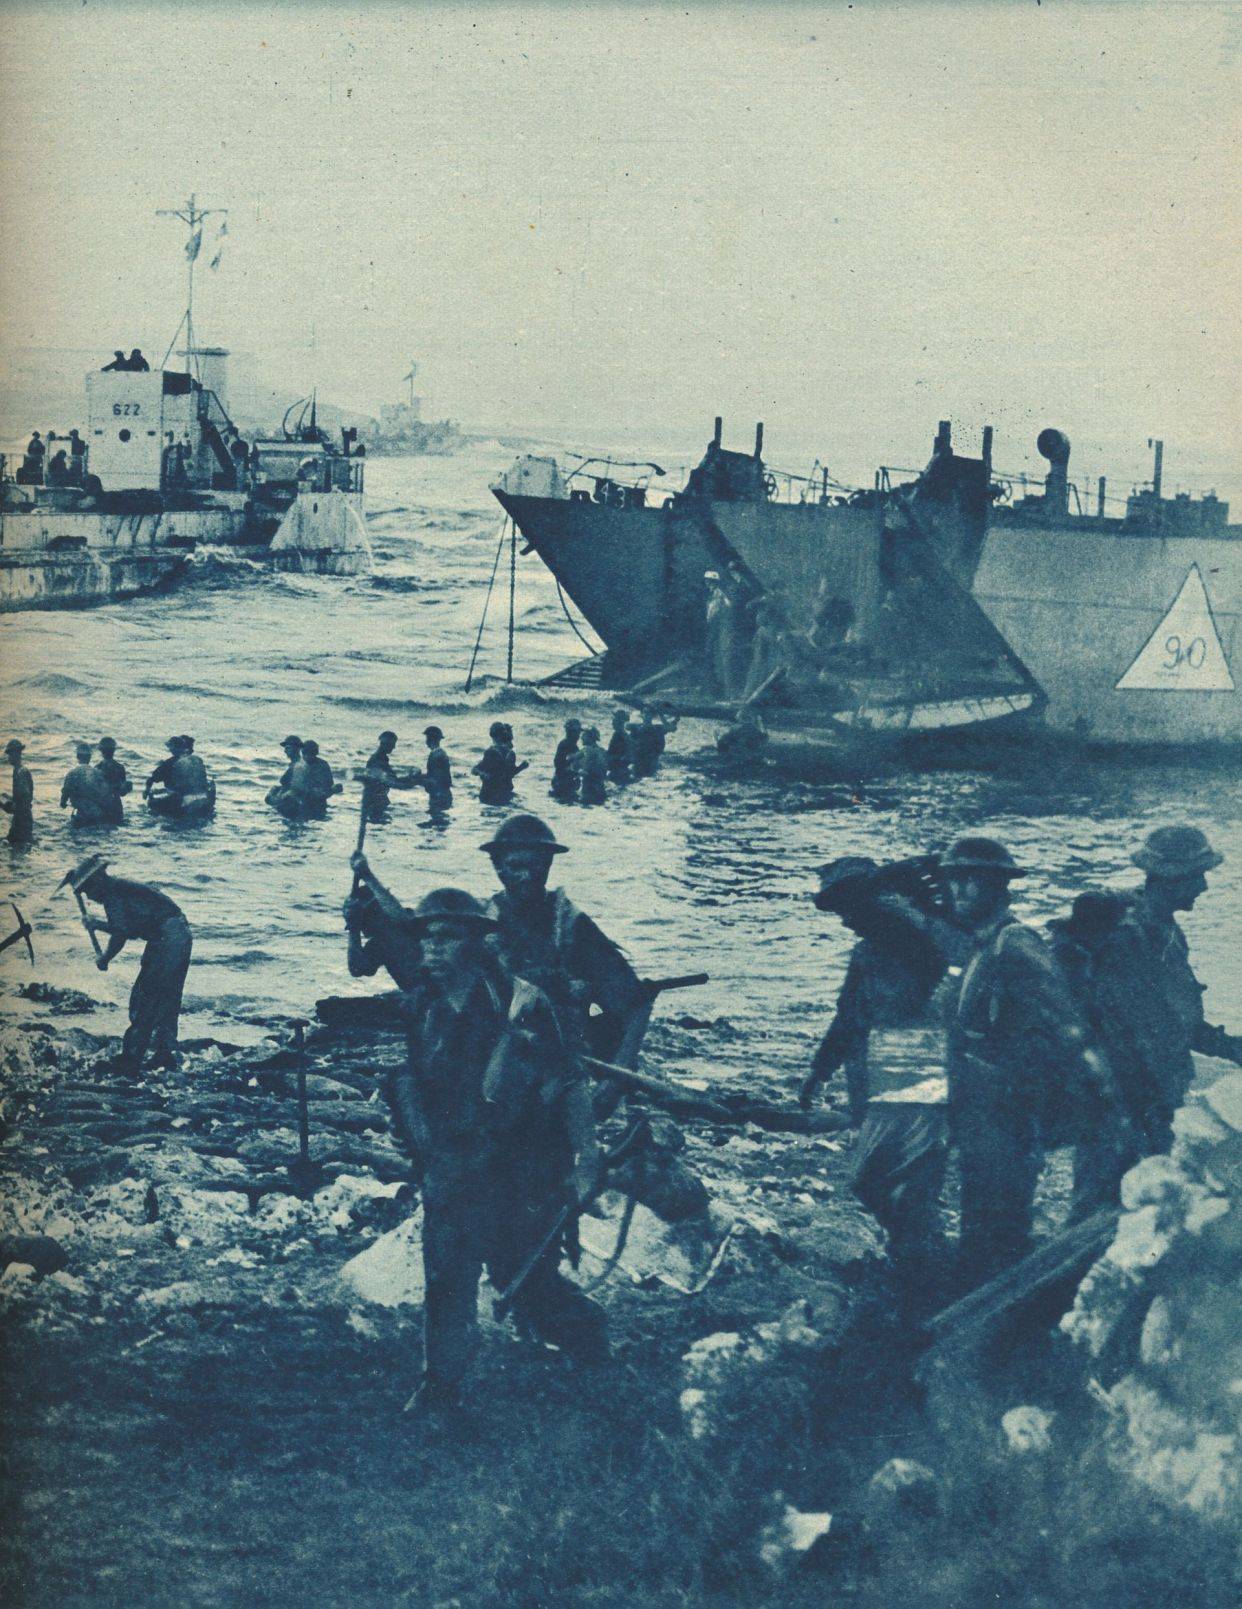 原创二战最大规模登陆战美英军队攻占西西里岛